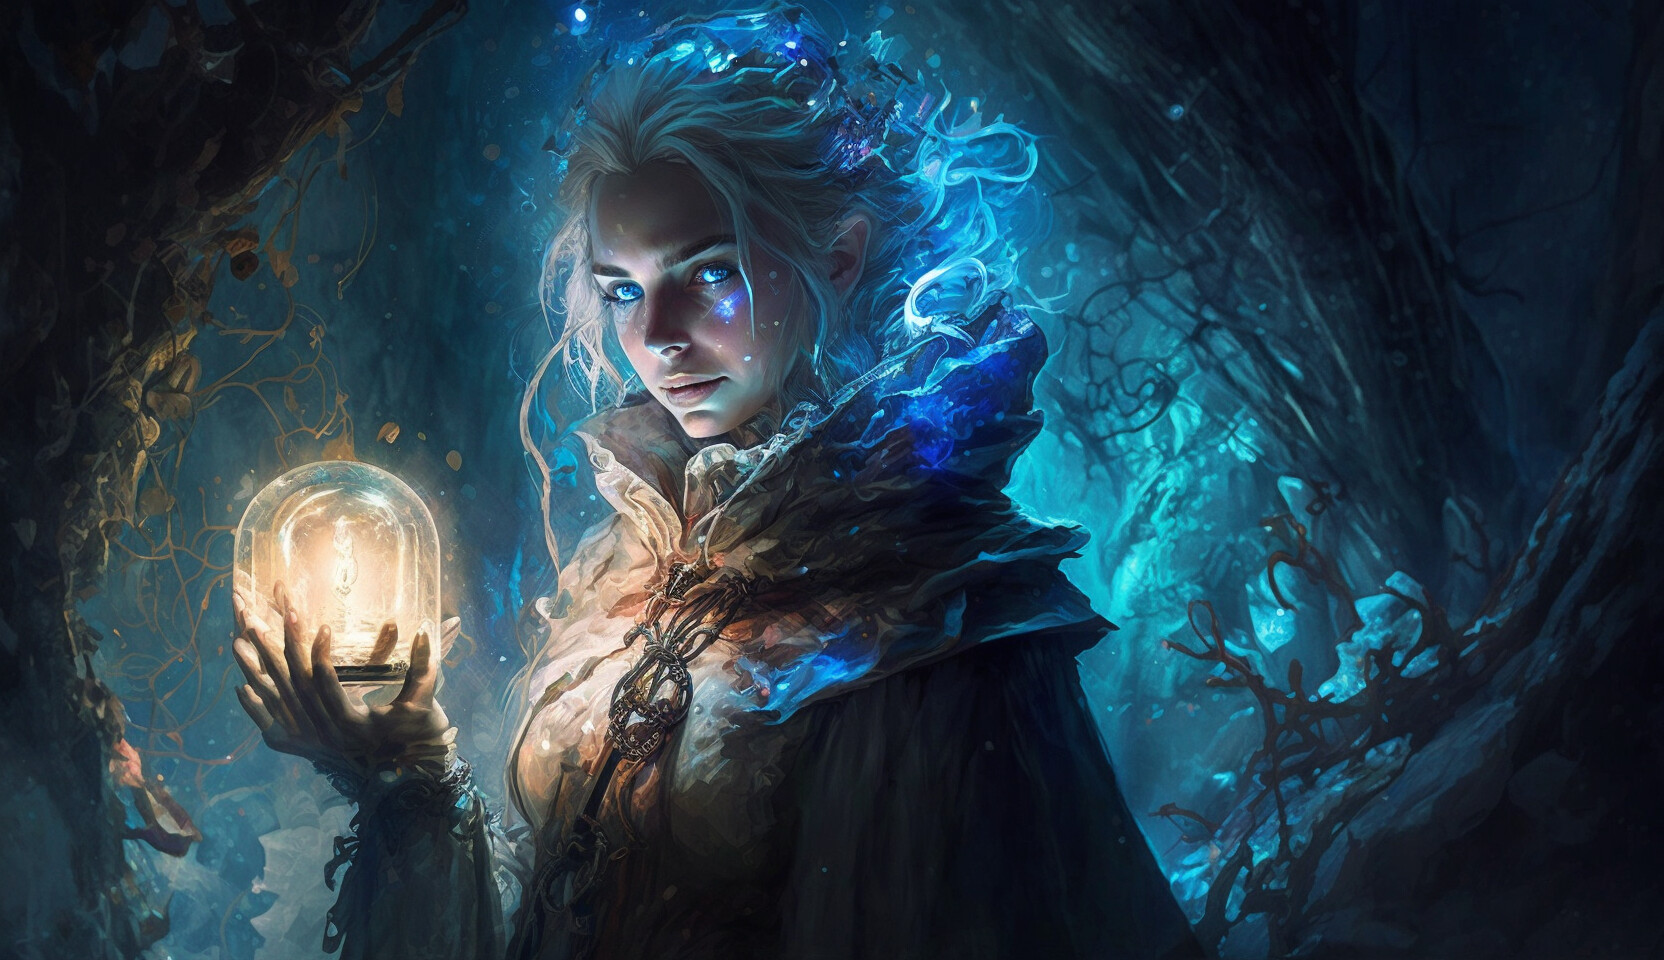 ArtStation - Fantasy World - Wizard - Fantasy Concept Digital Art